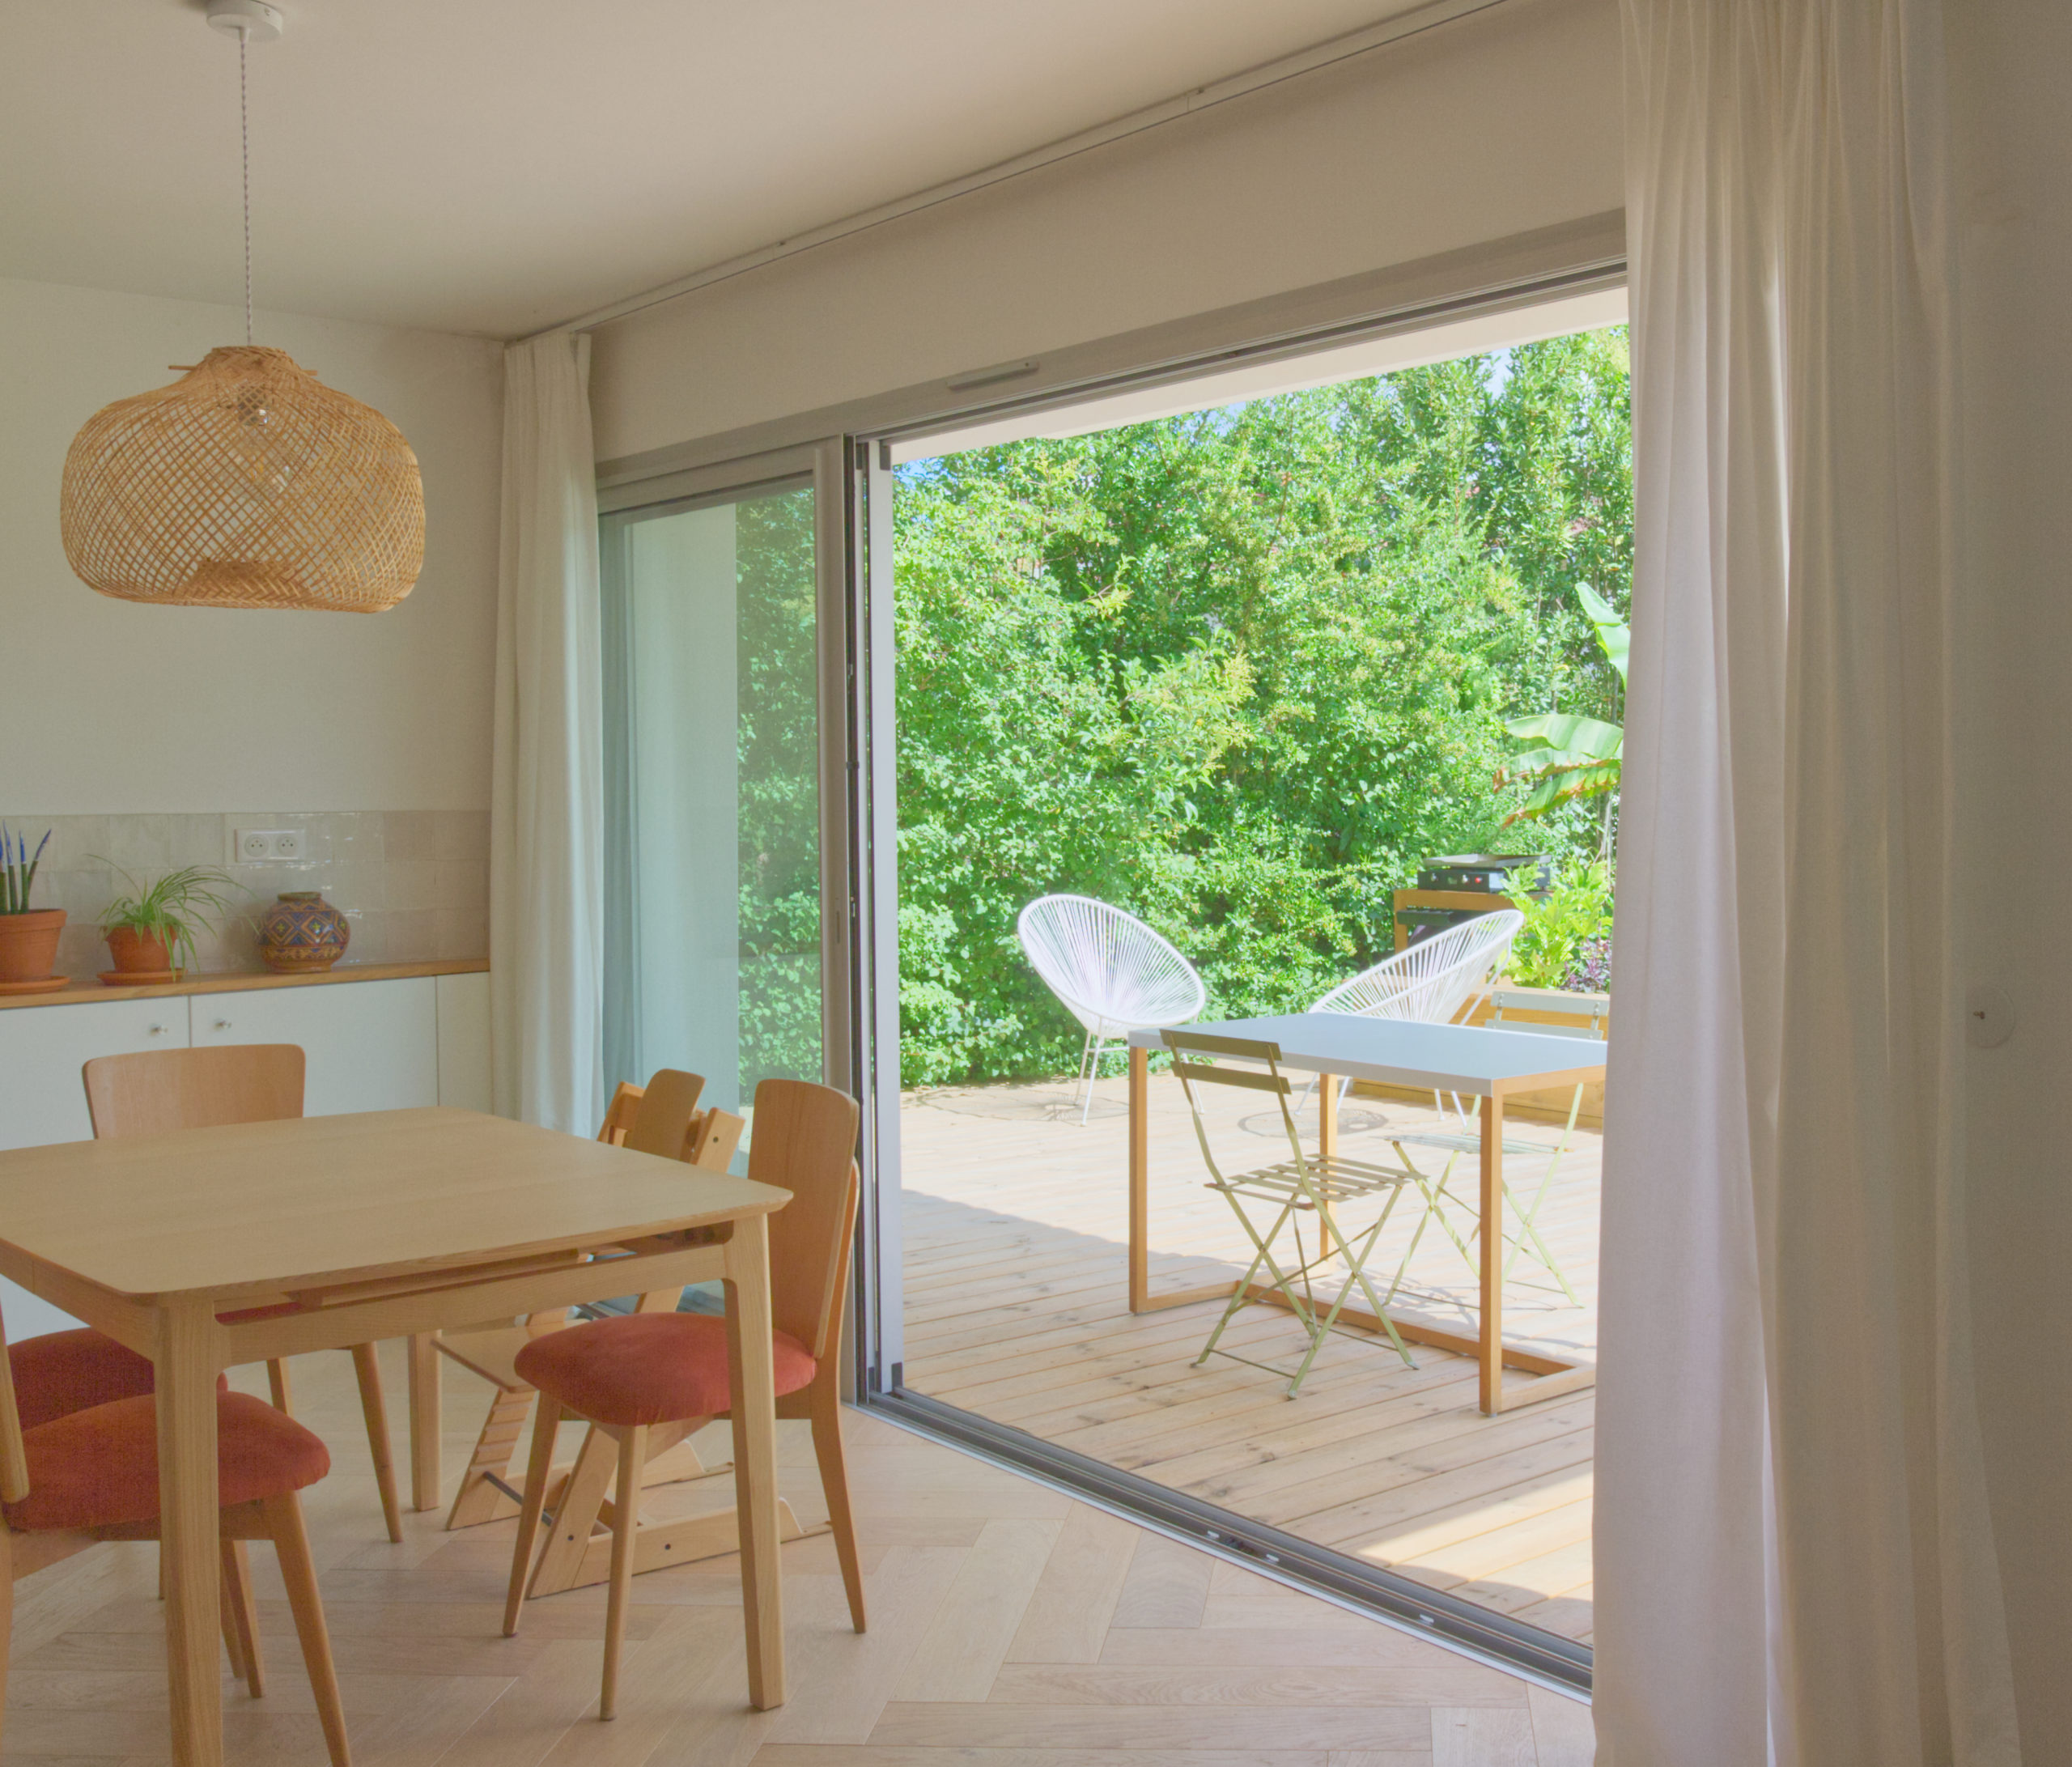 Séjour maison A- aménagement  terrasse extérieure bois-continuité intérieur-extérieur-architectes toulouse- saarchitectes